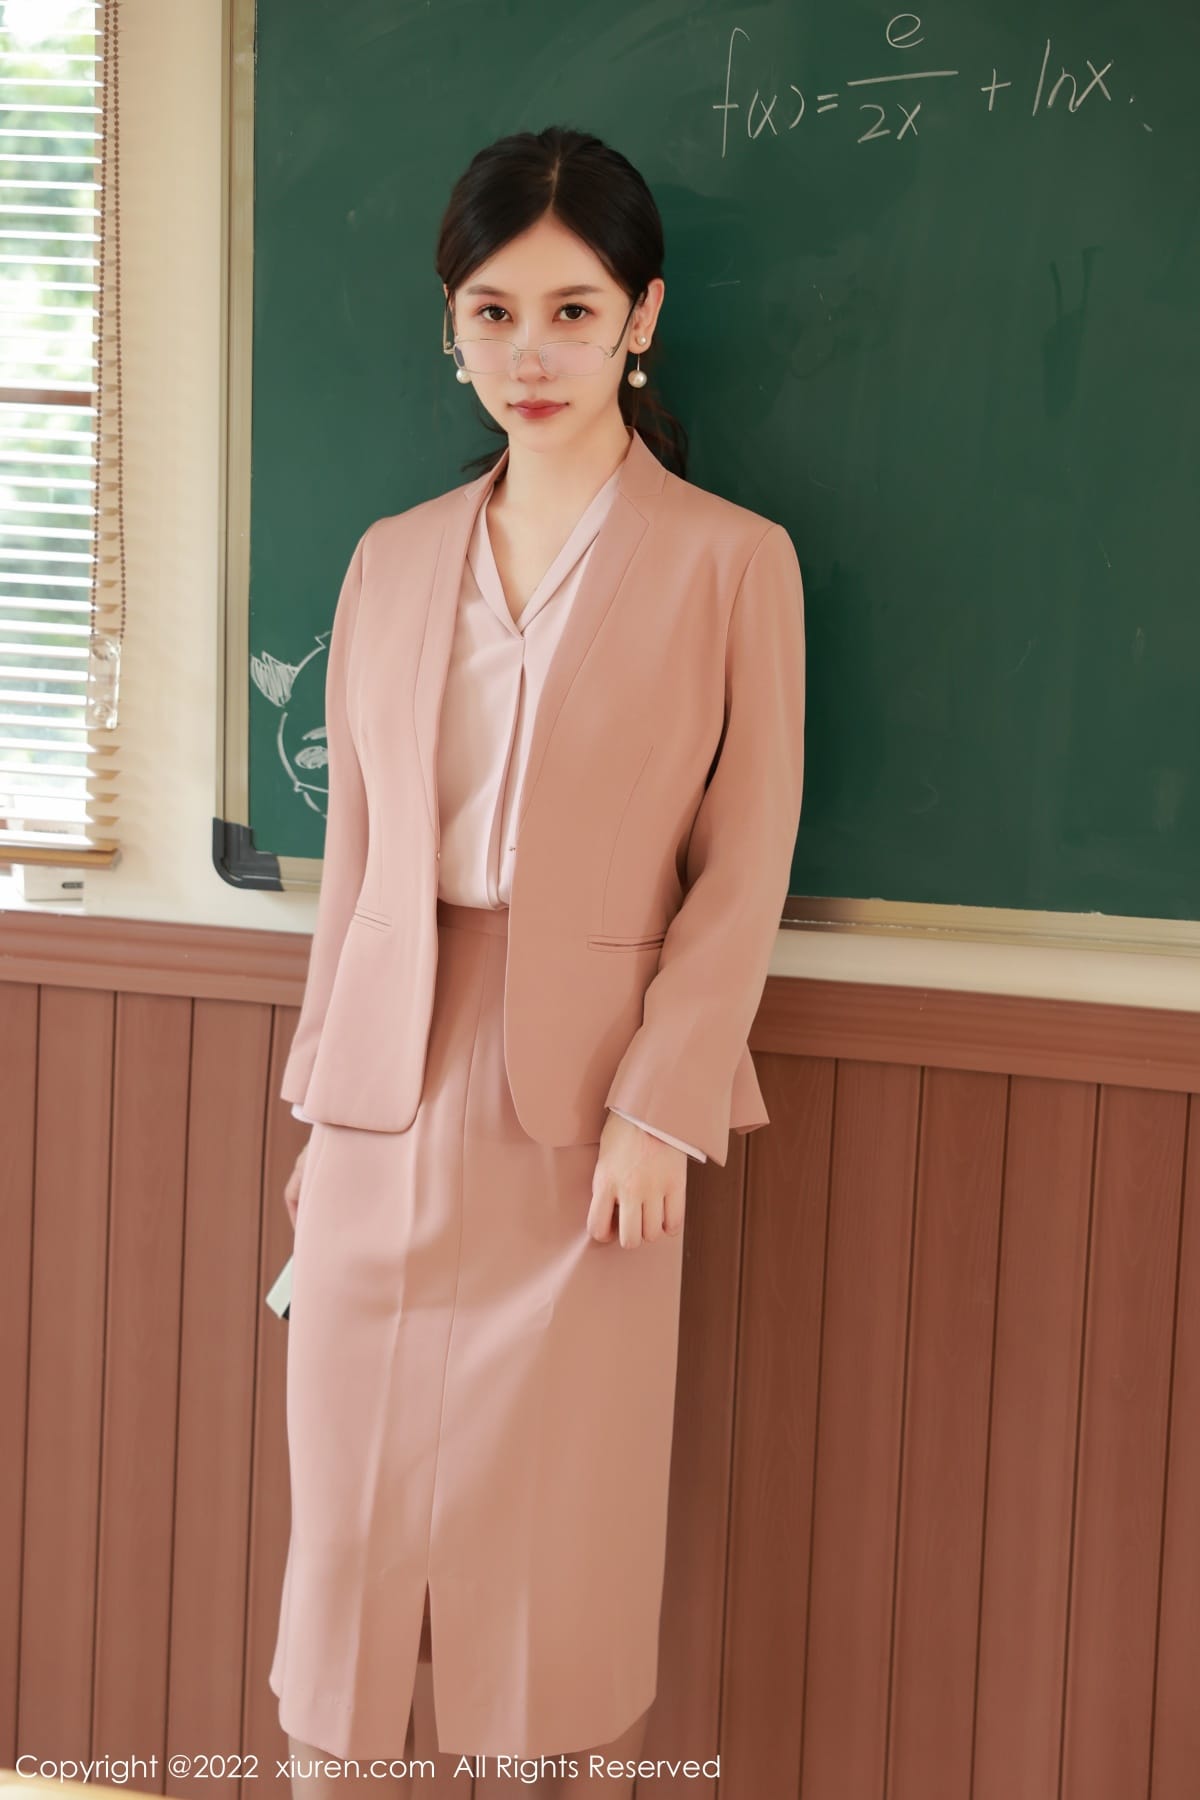 尹甜甜浅色服饰搭配裙子教师角色性感写真